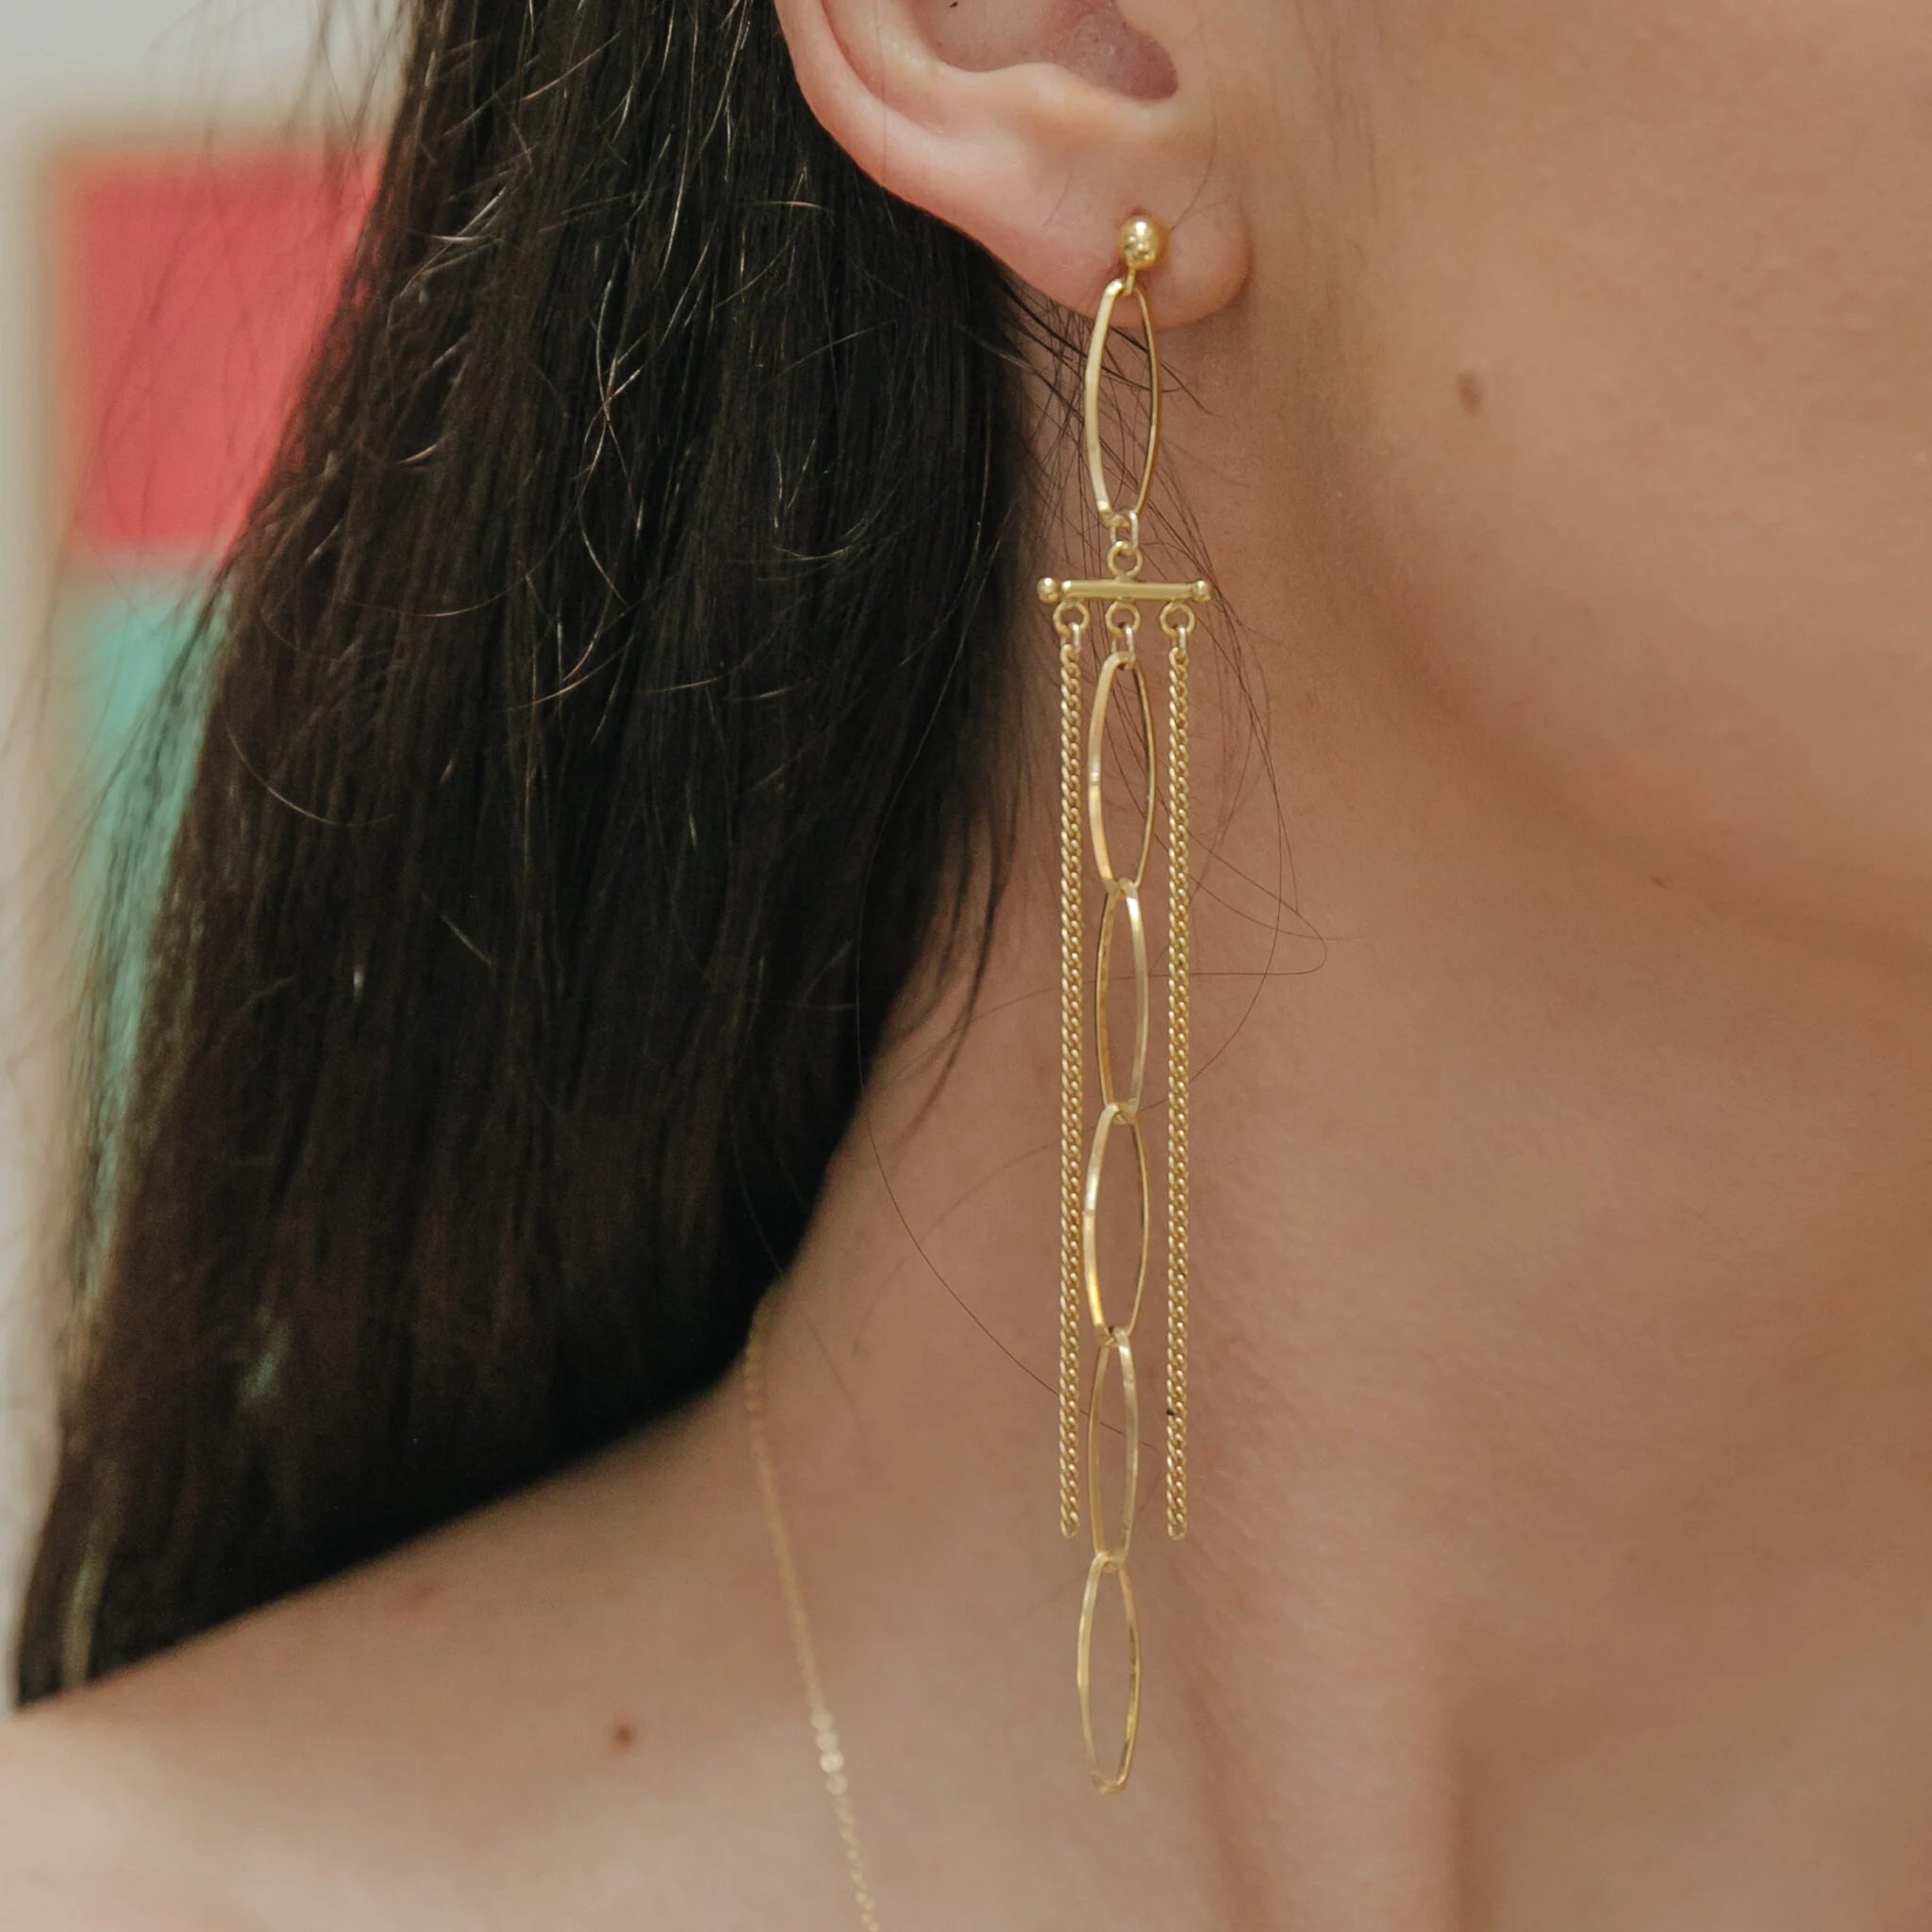 Hoja chandelier earrings, gold